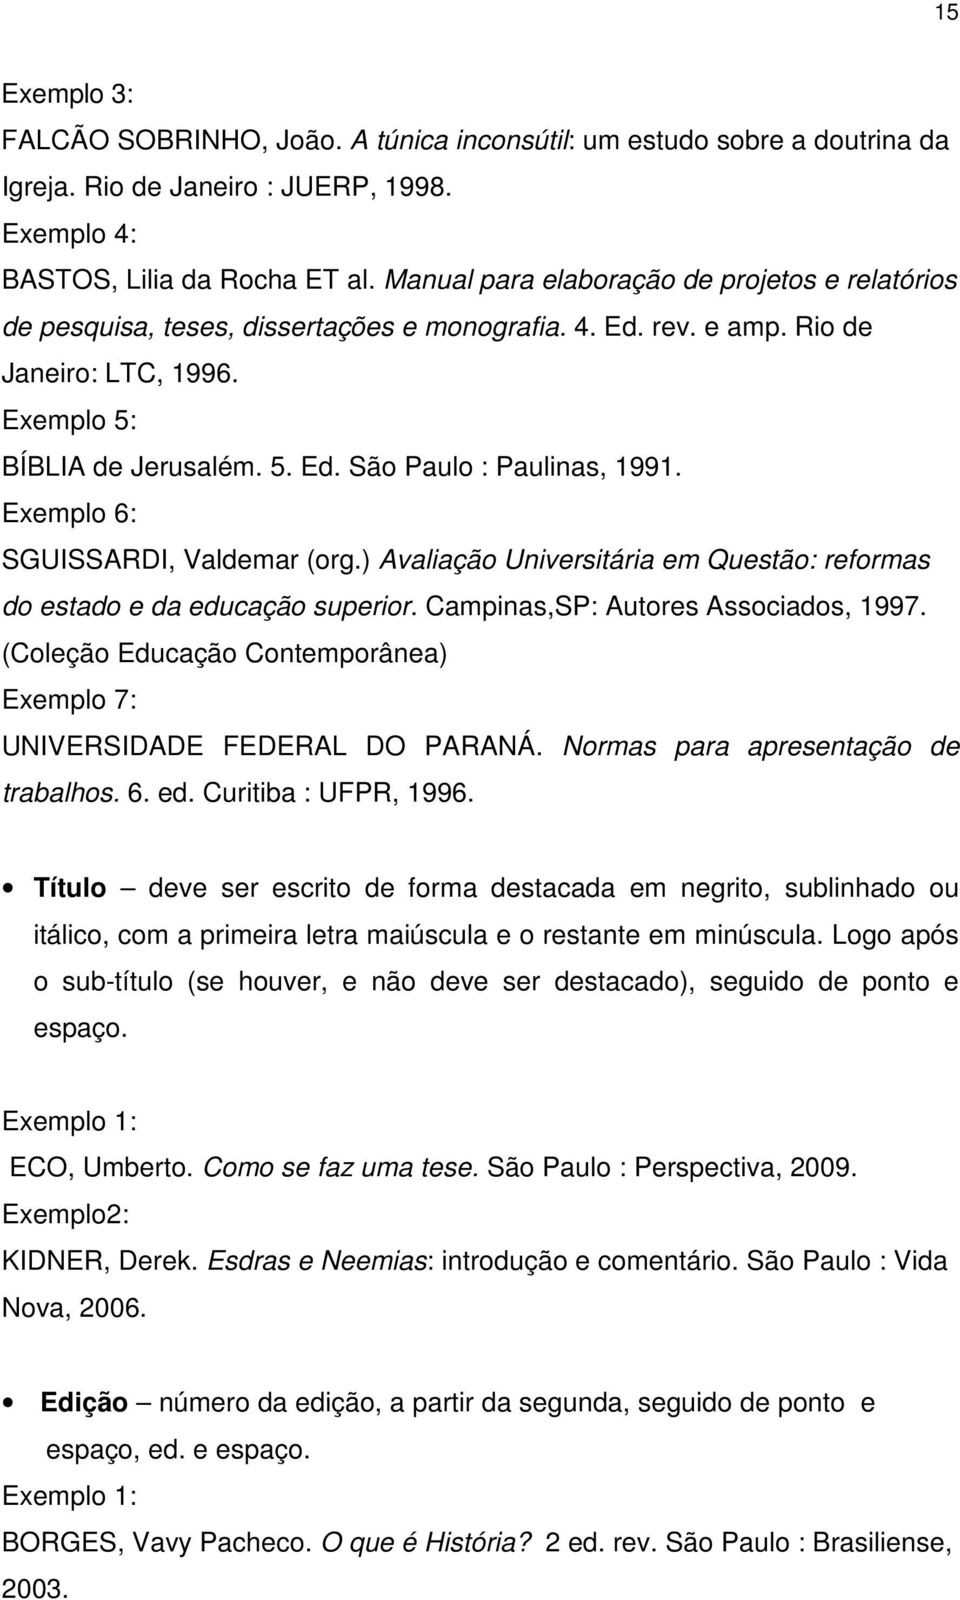 Exemplo 6: SGUISSARDI, Valdemar (org.) Avaliação Universitária em Questão: reformas do estado e da educação superior. Campinas,SP: Autores Associados, 1997.